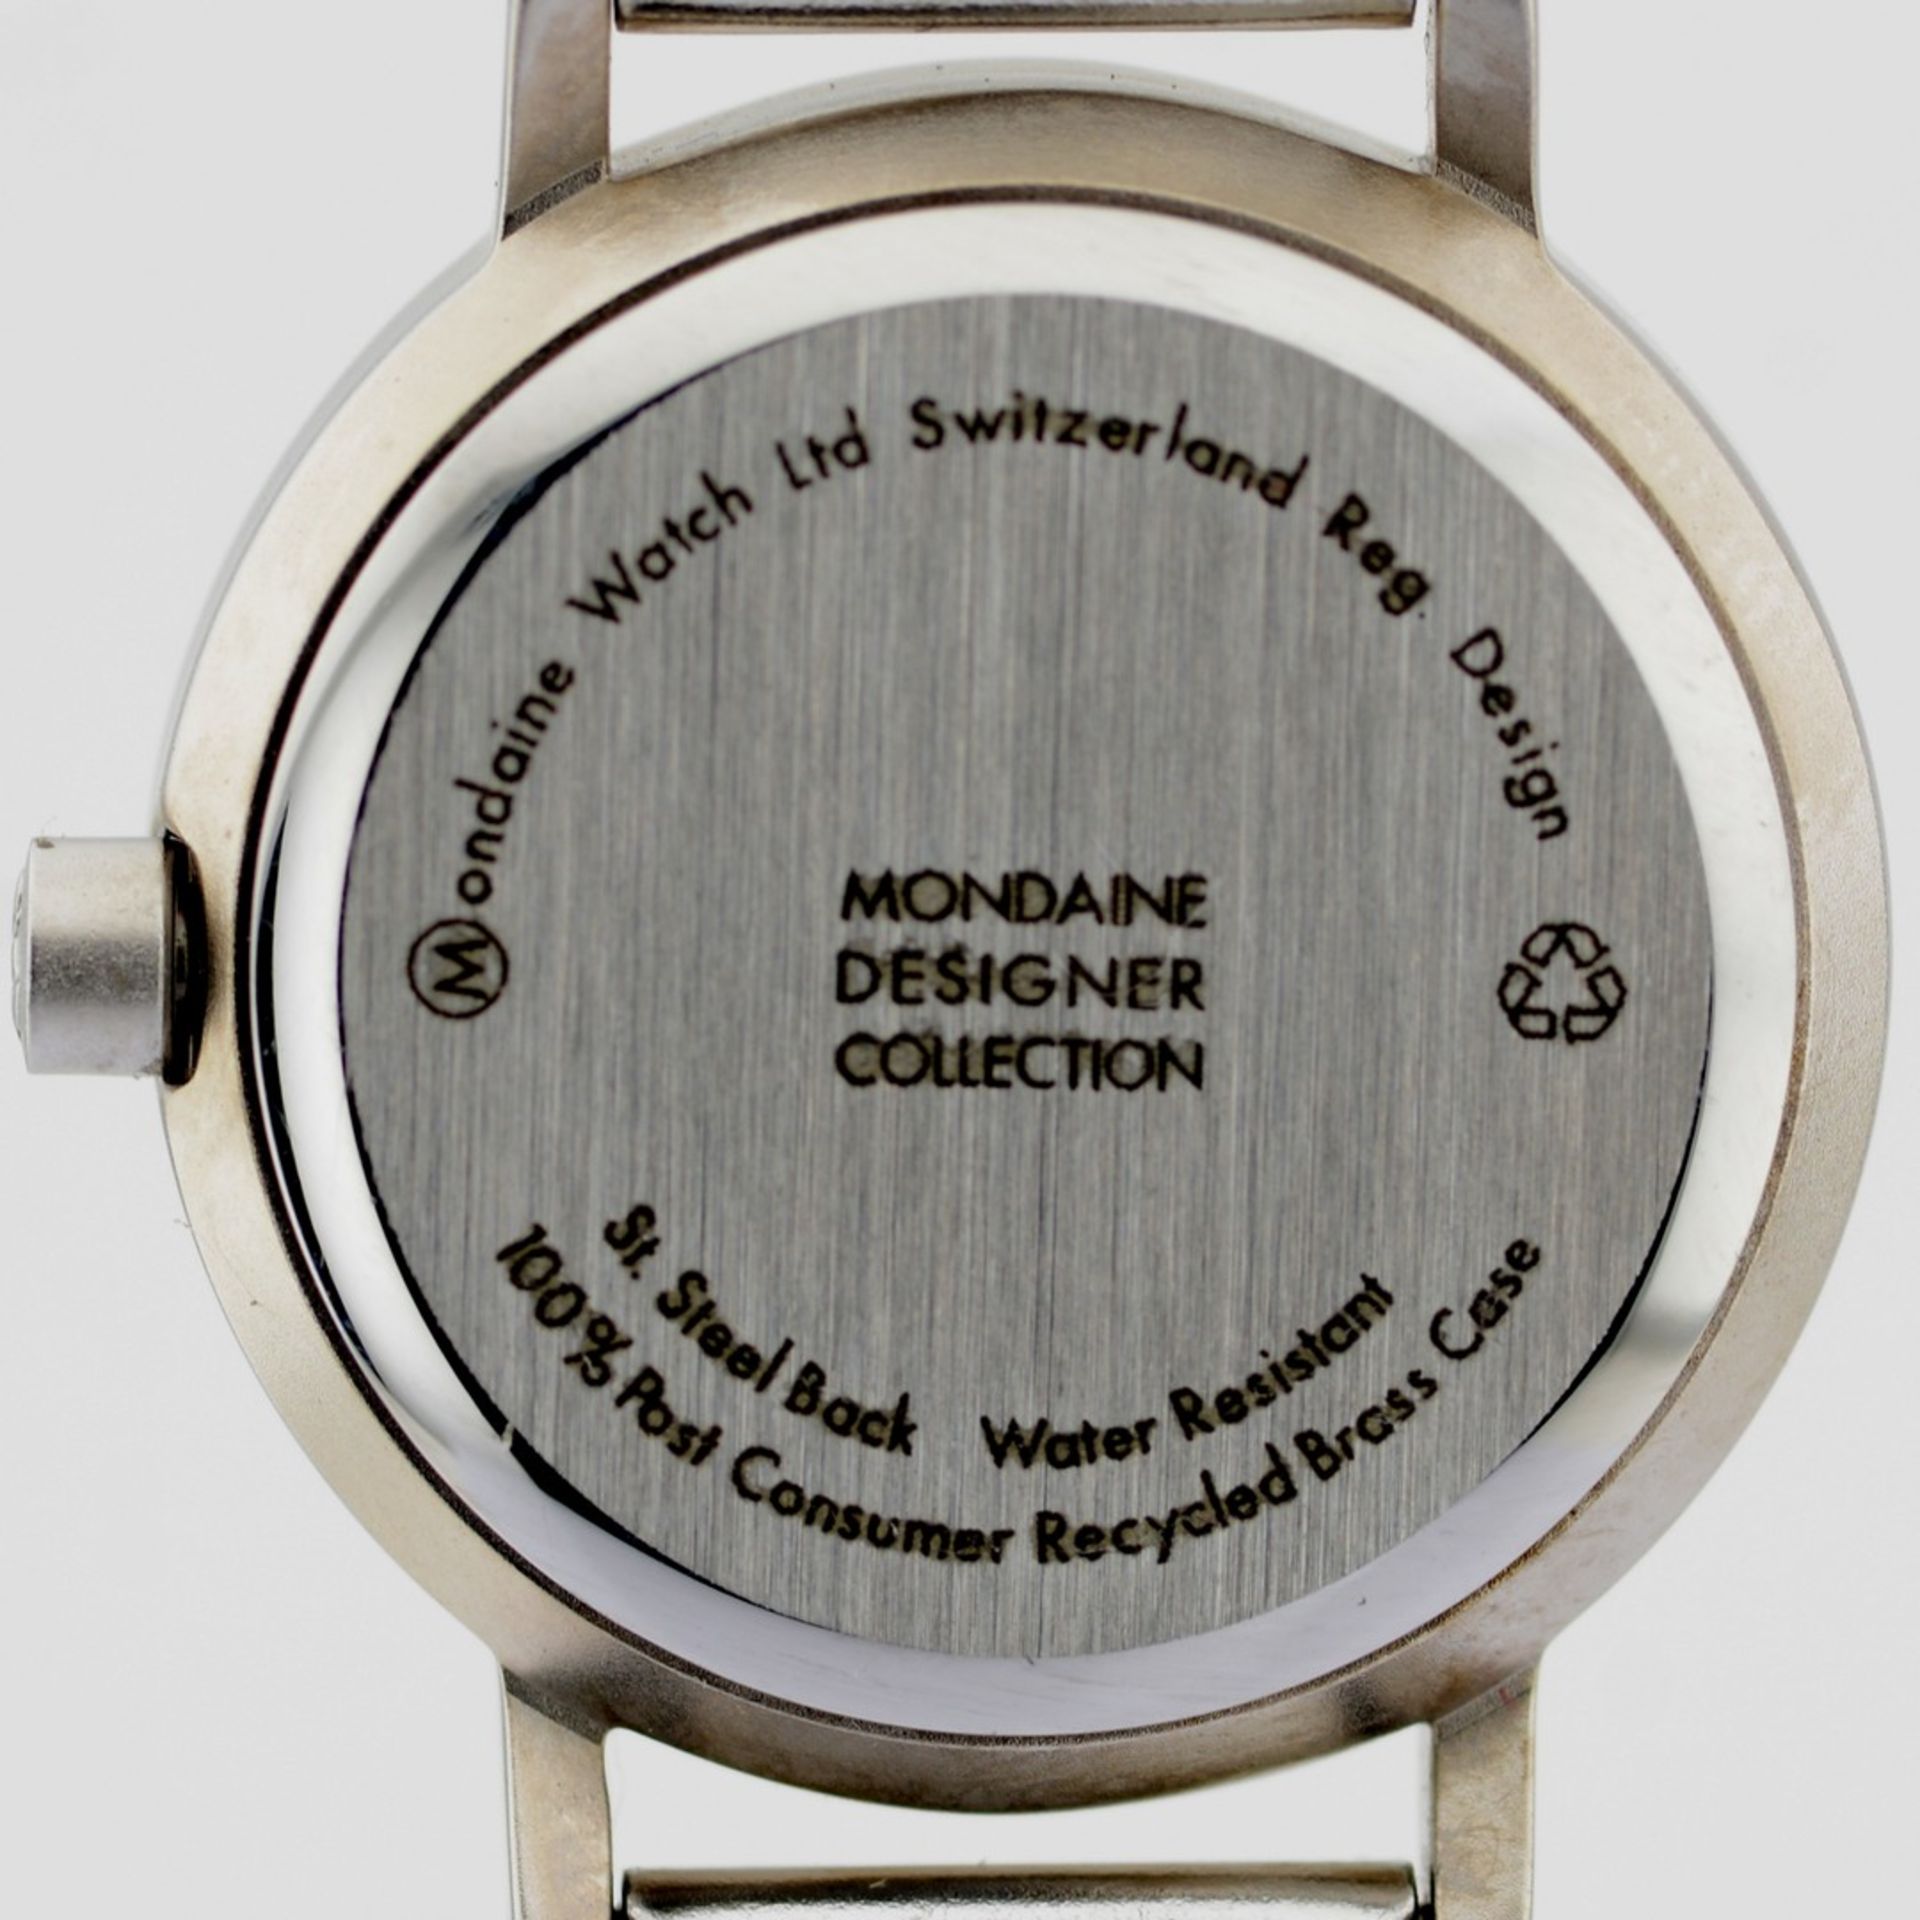 Mondaine / Swiss Designer Collection - (Unworn) Lady's Brass Wrist Watch - Image 5 of 9